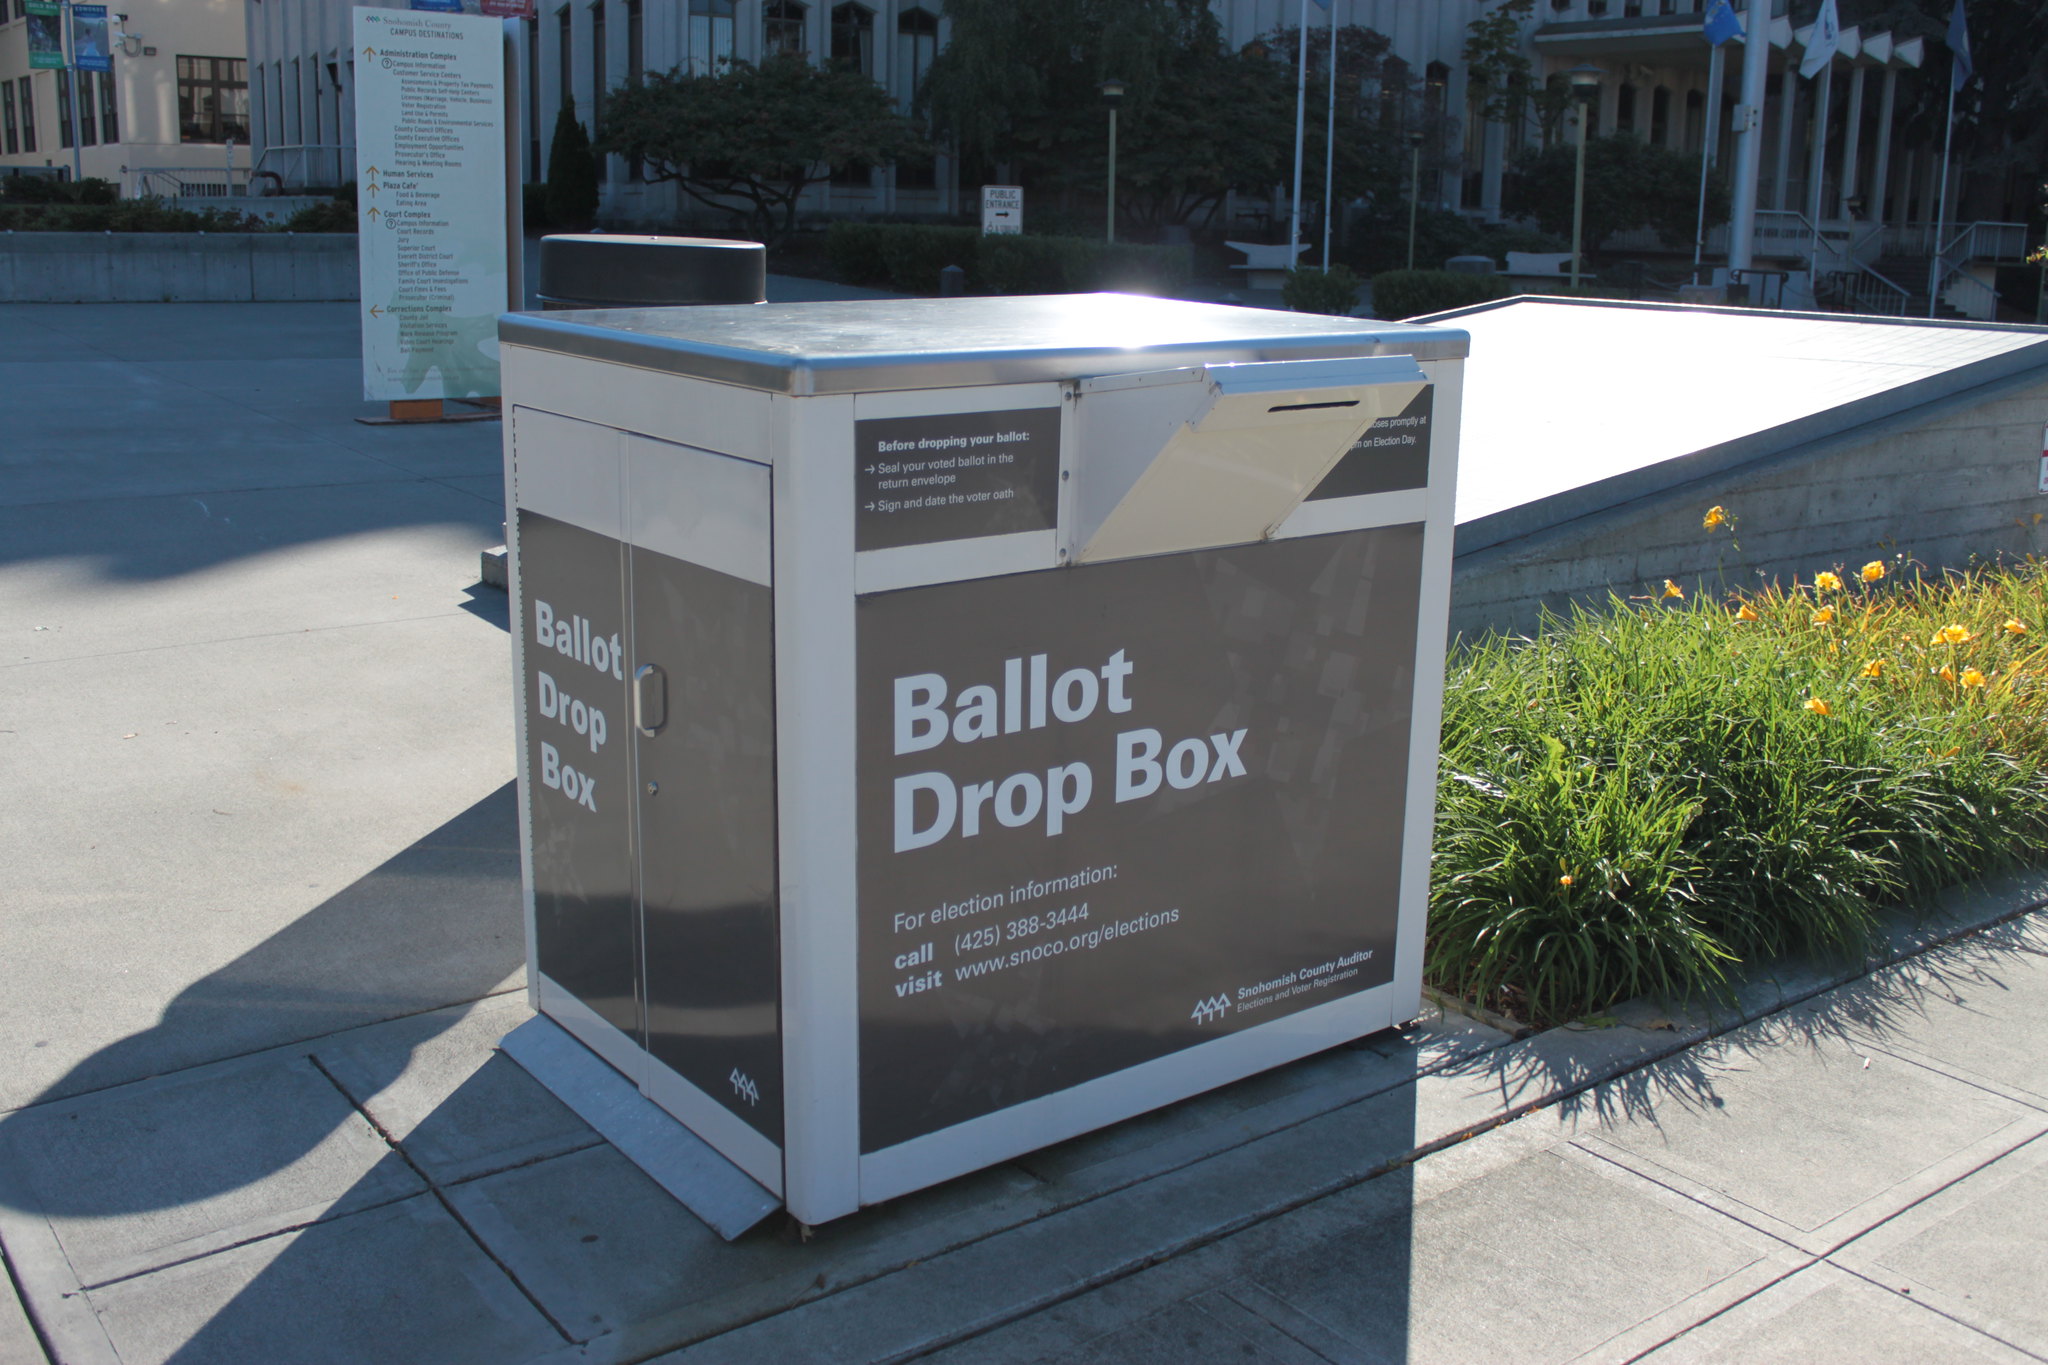 Ballot Drop Box at Snohomish County Campus